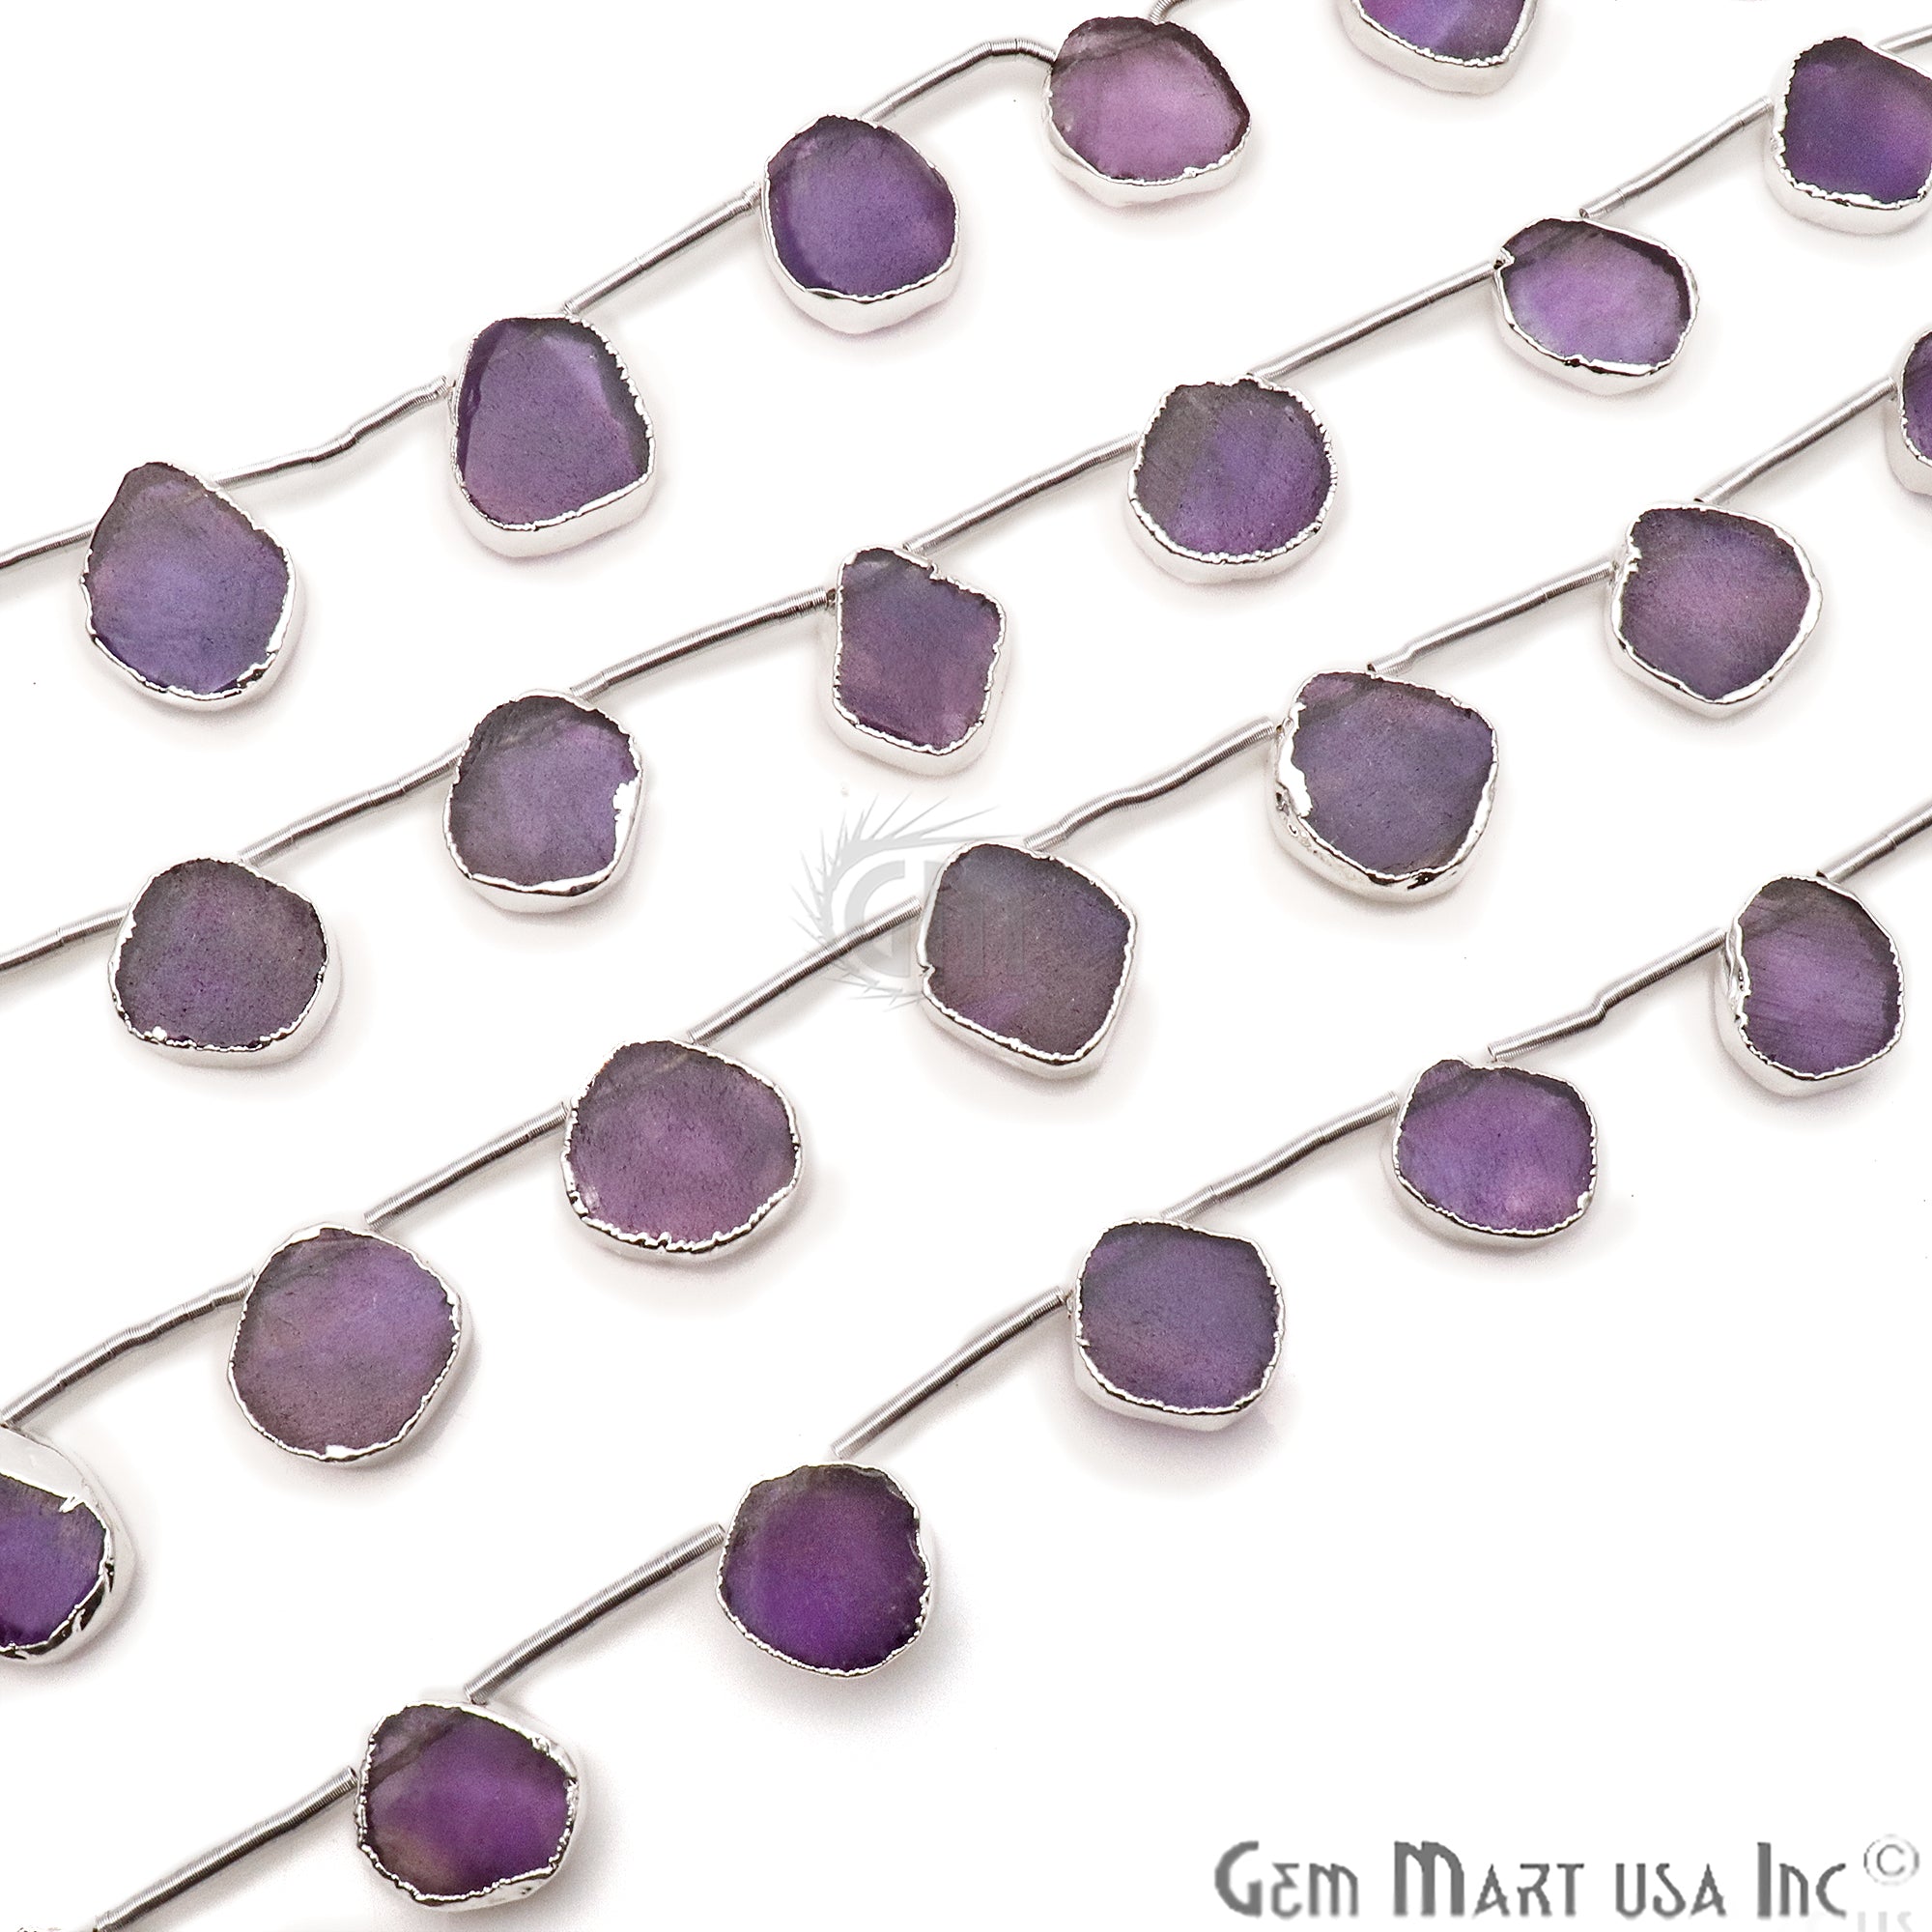 Amethyst Free Form 15x18mm Crafting Beads Gemstone Strands 9INCH - GemMartUSA